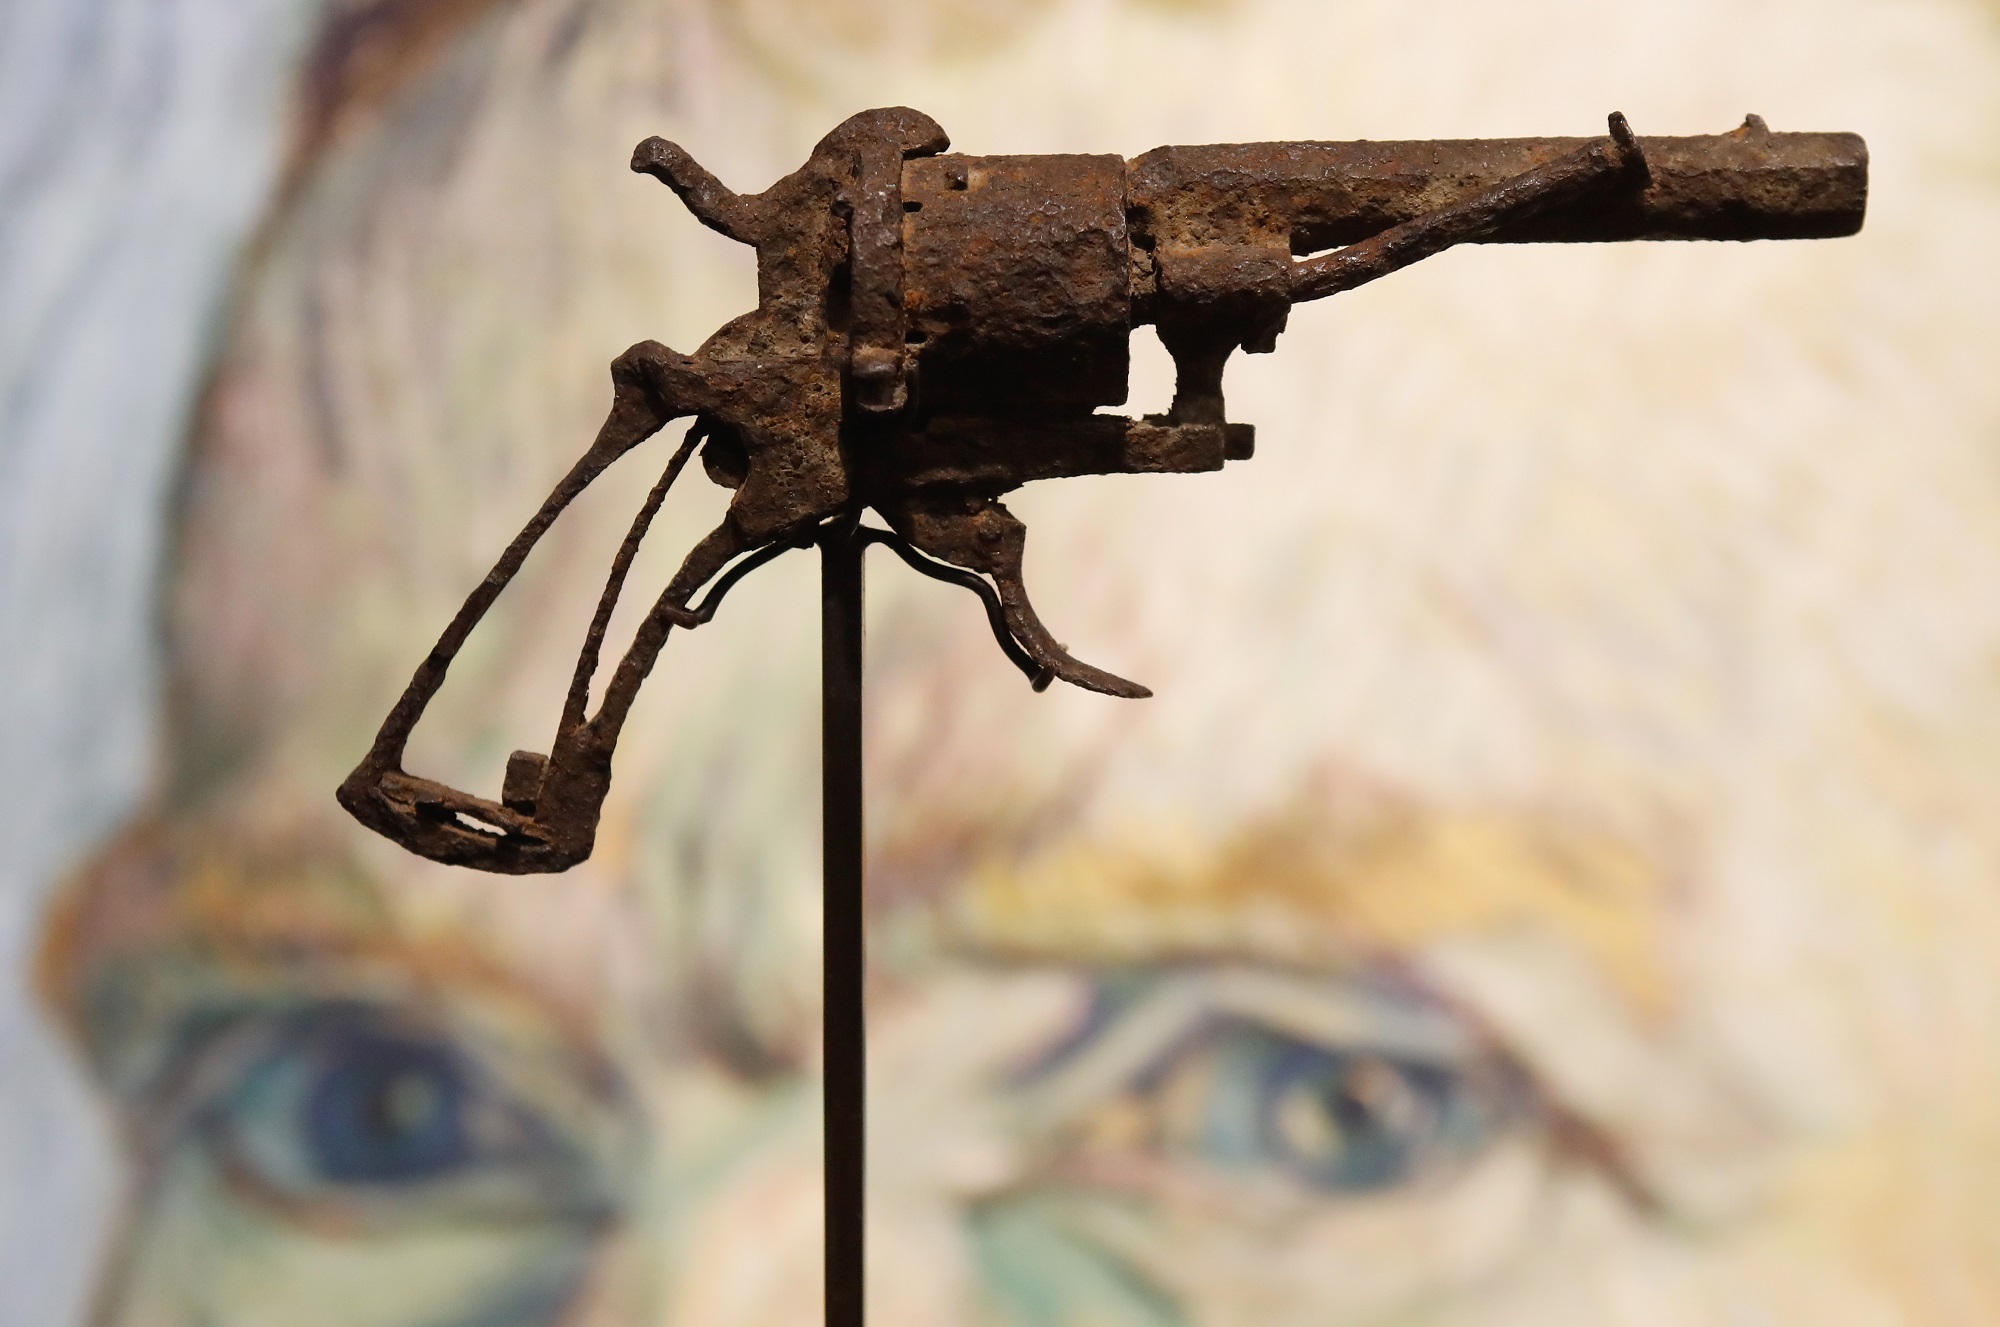 Subastarán el revolver con que se suicido Vincent van Gogh (foto)